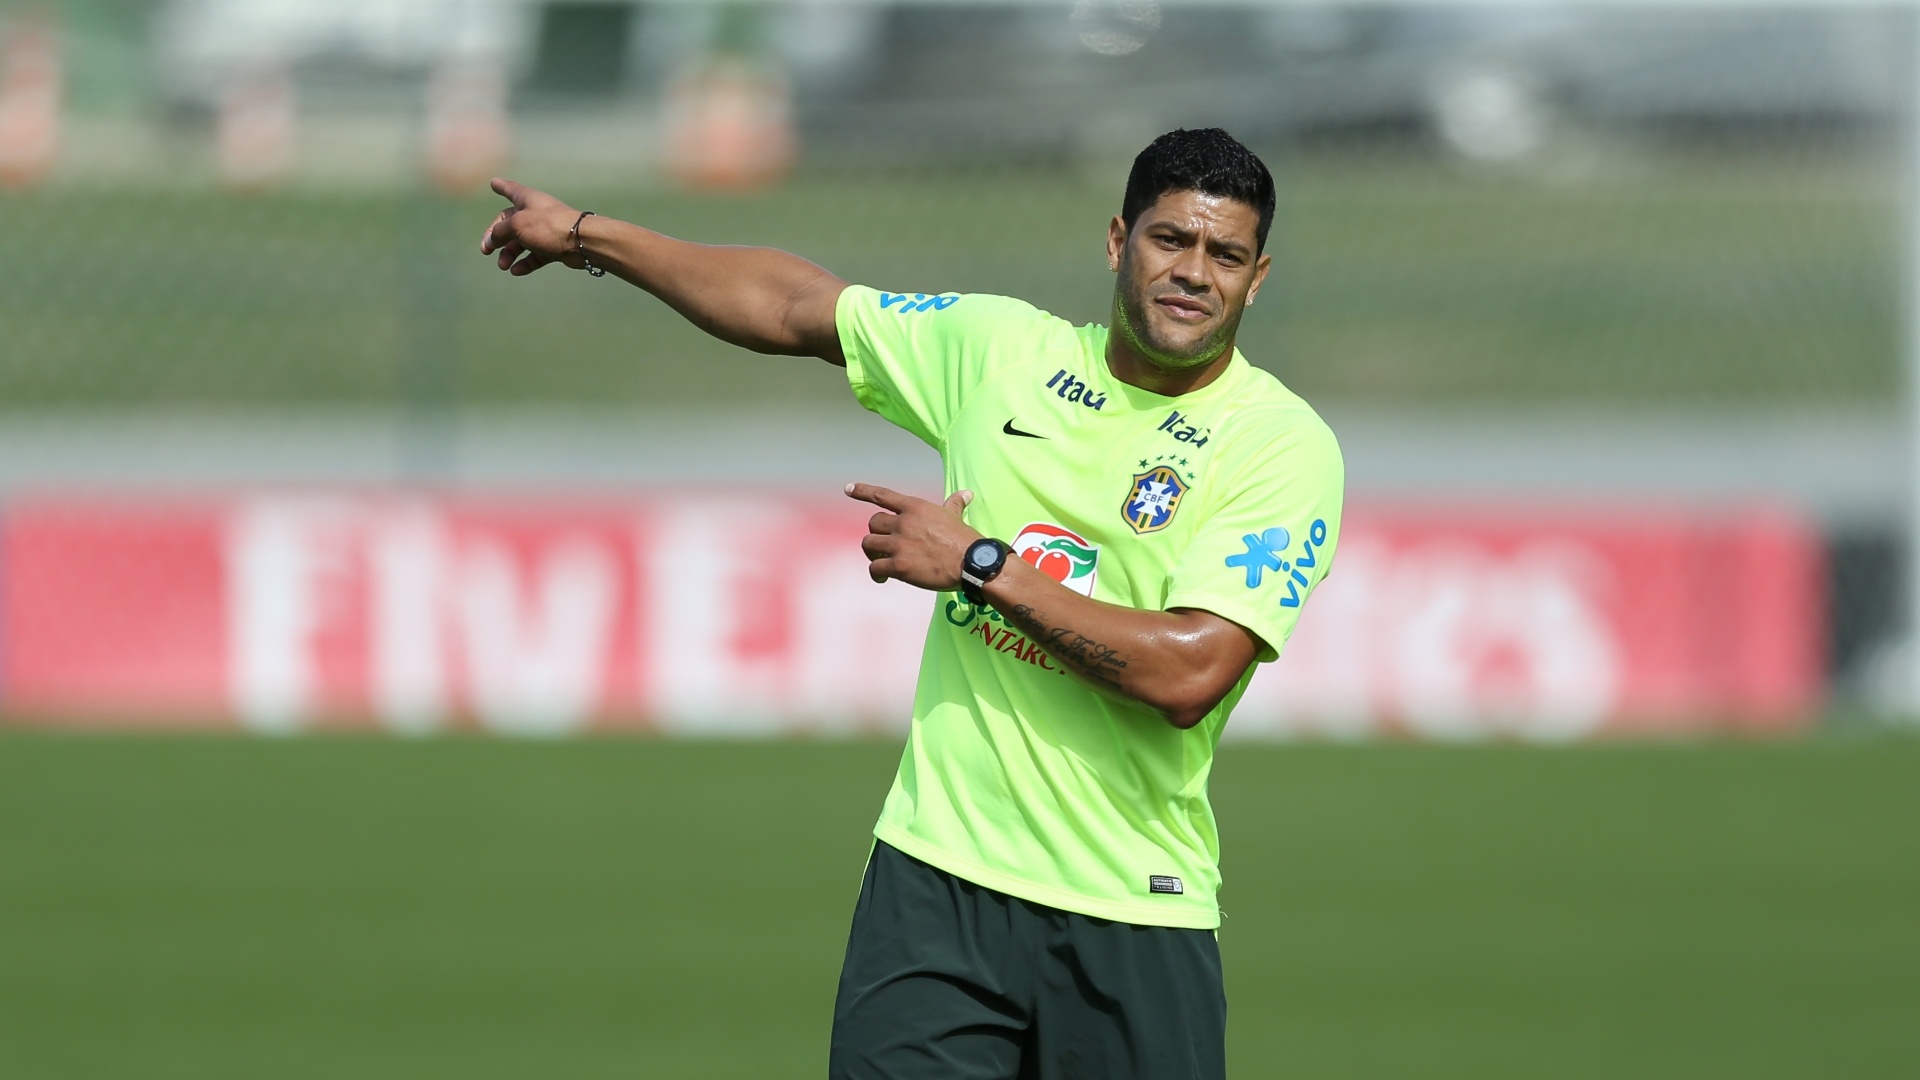 26.jun.2014 - Hulk indica jogada durante coletivo da seleção brasileira em treino na Granja Comary, em Teresópolis